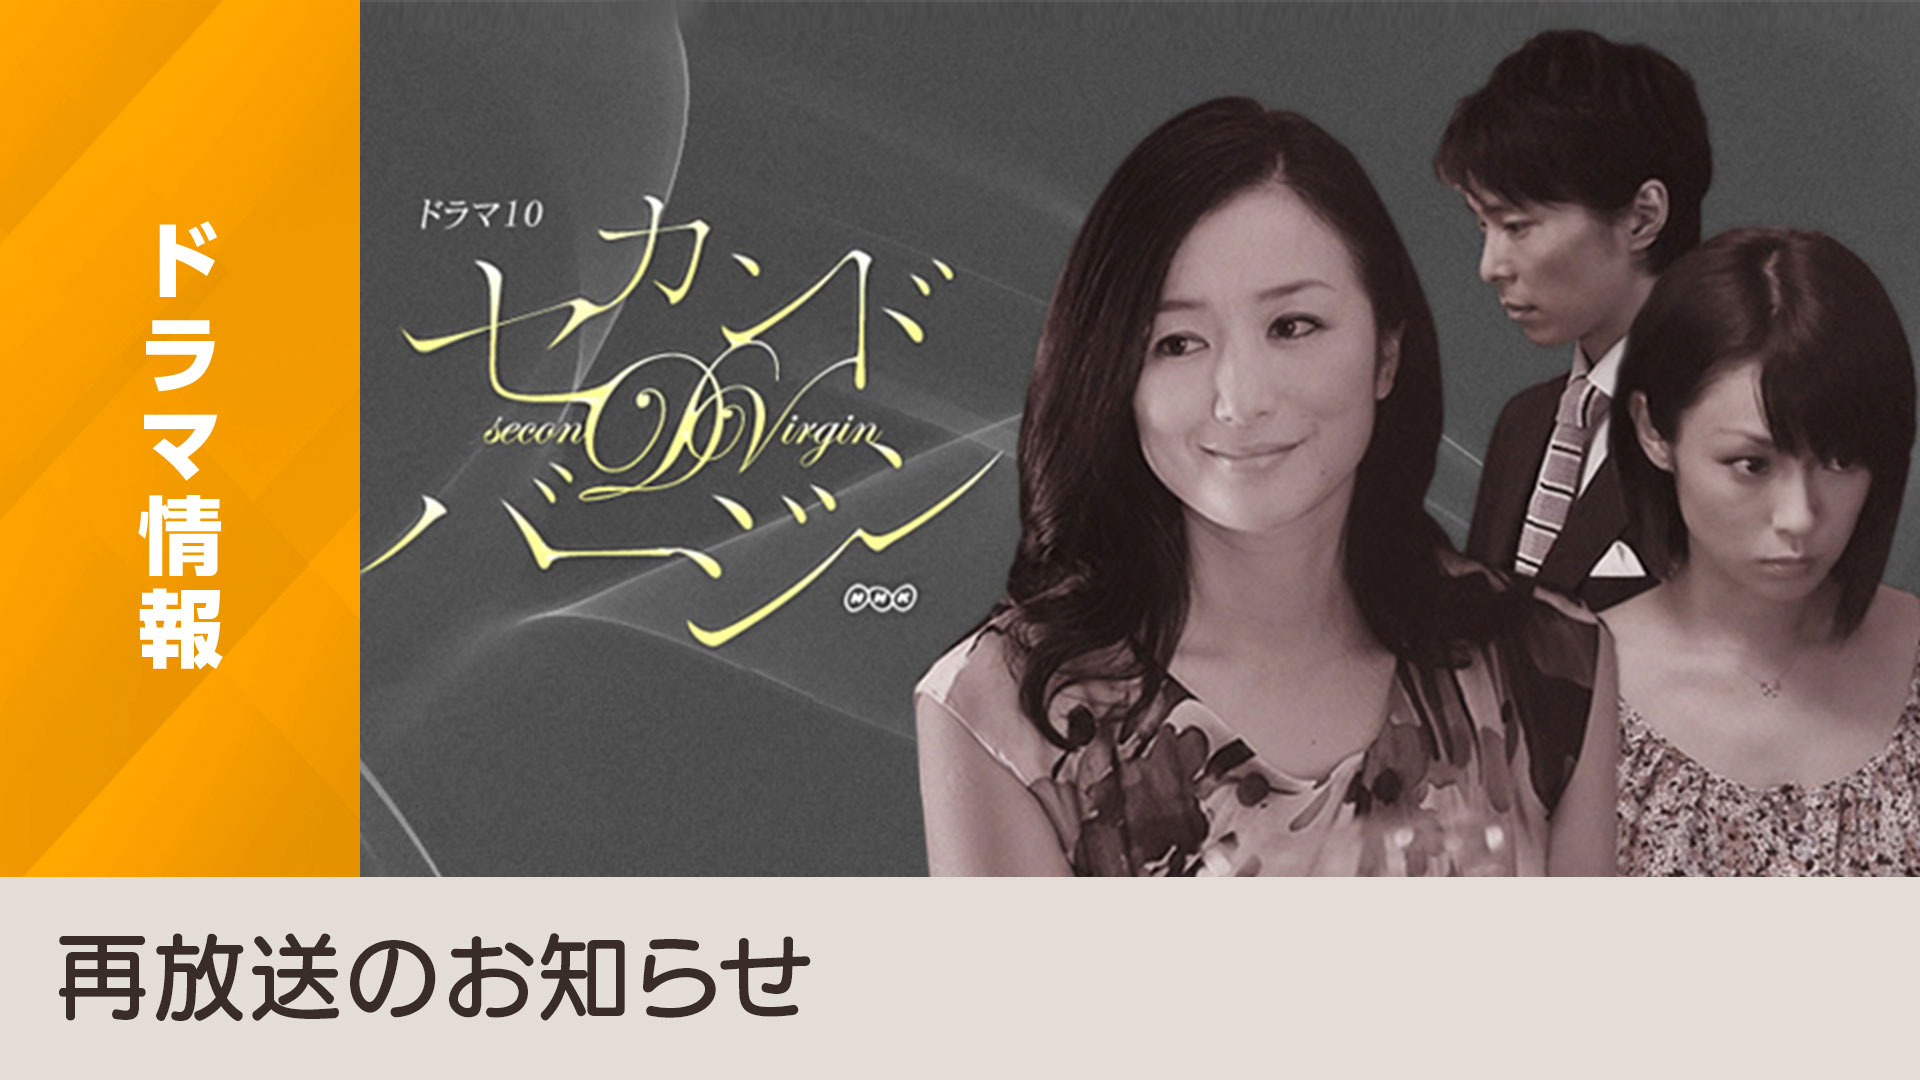 映画化もされた「セカンドバージン」がリマスター映像でBSプレミアム4Kに登場。 - NHK